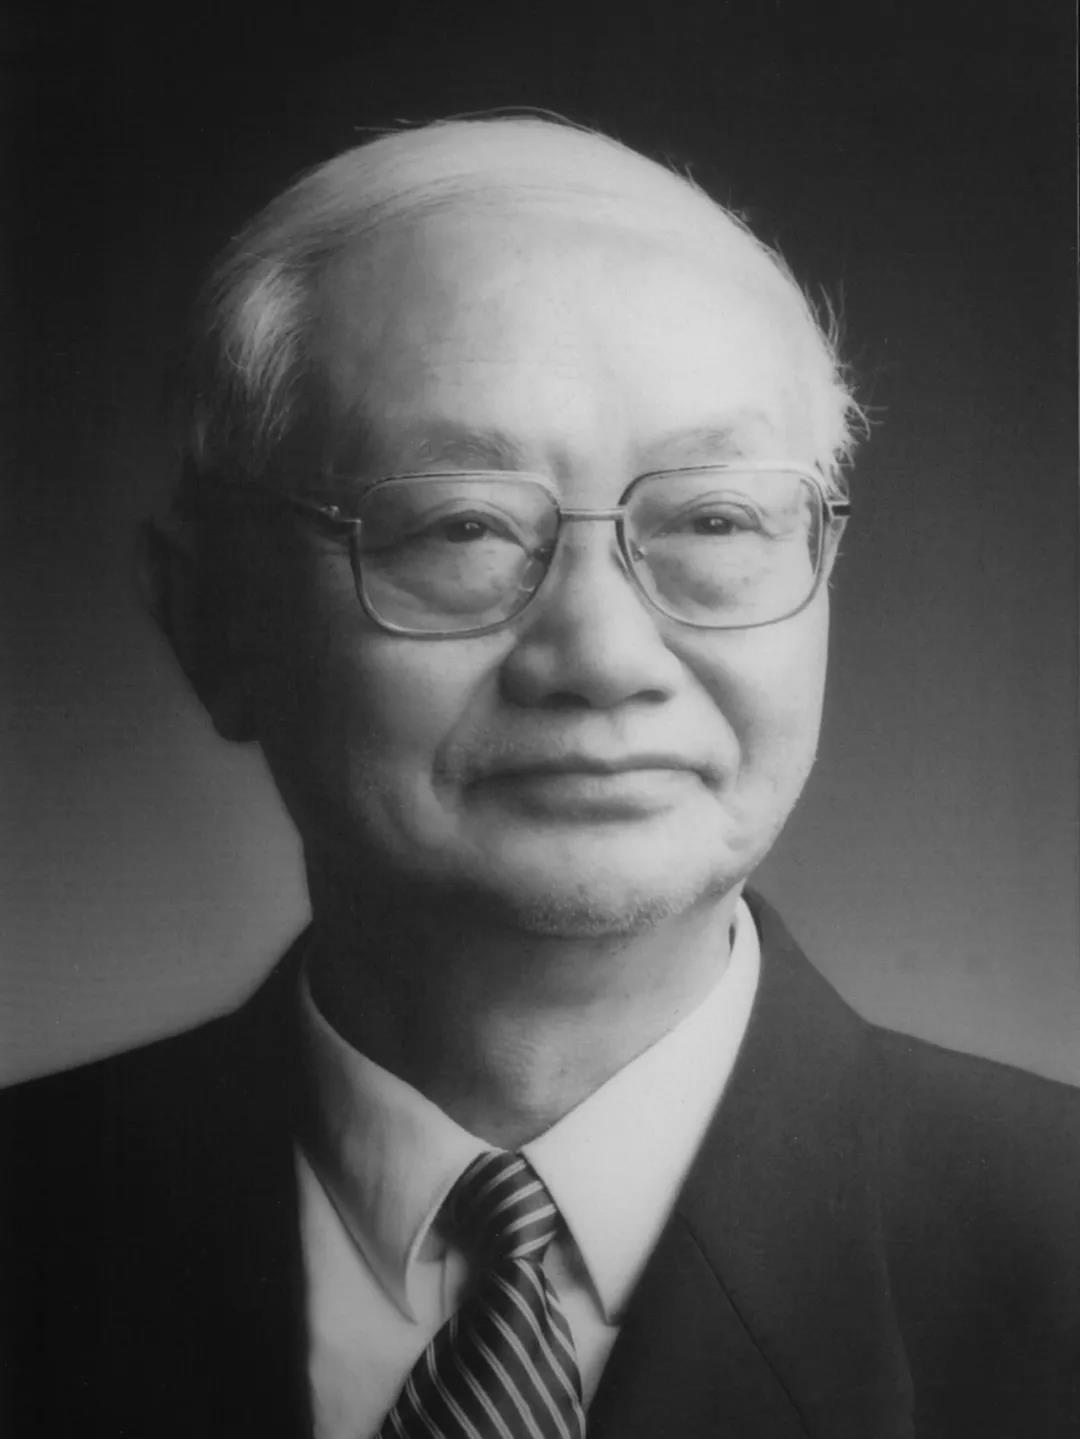 中国工程院院士、著名矿冶学家戴永年先生逝世 享年92岁